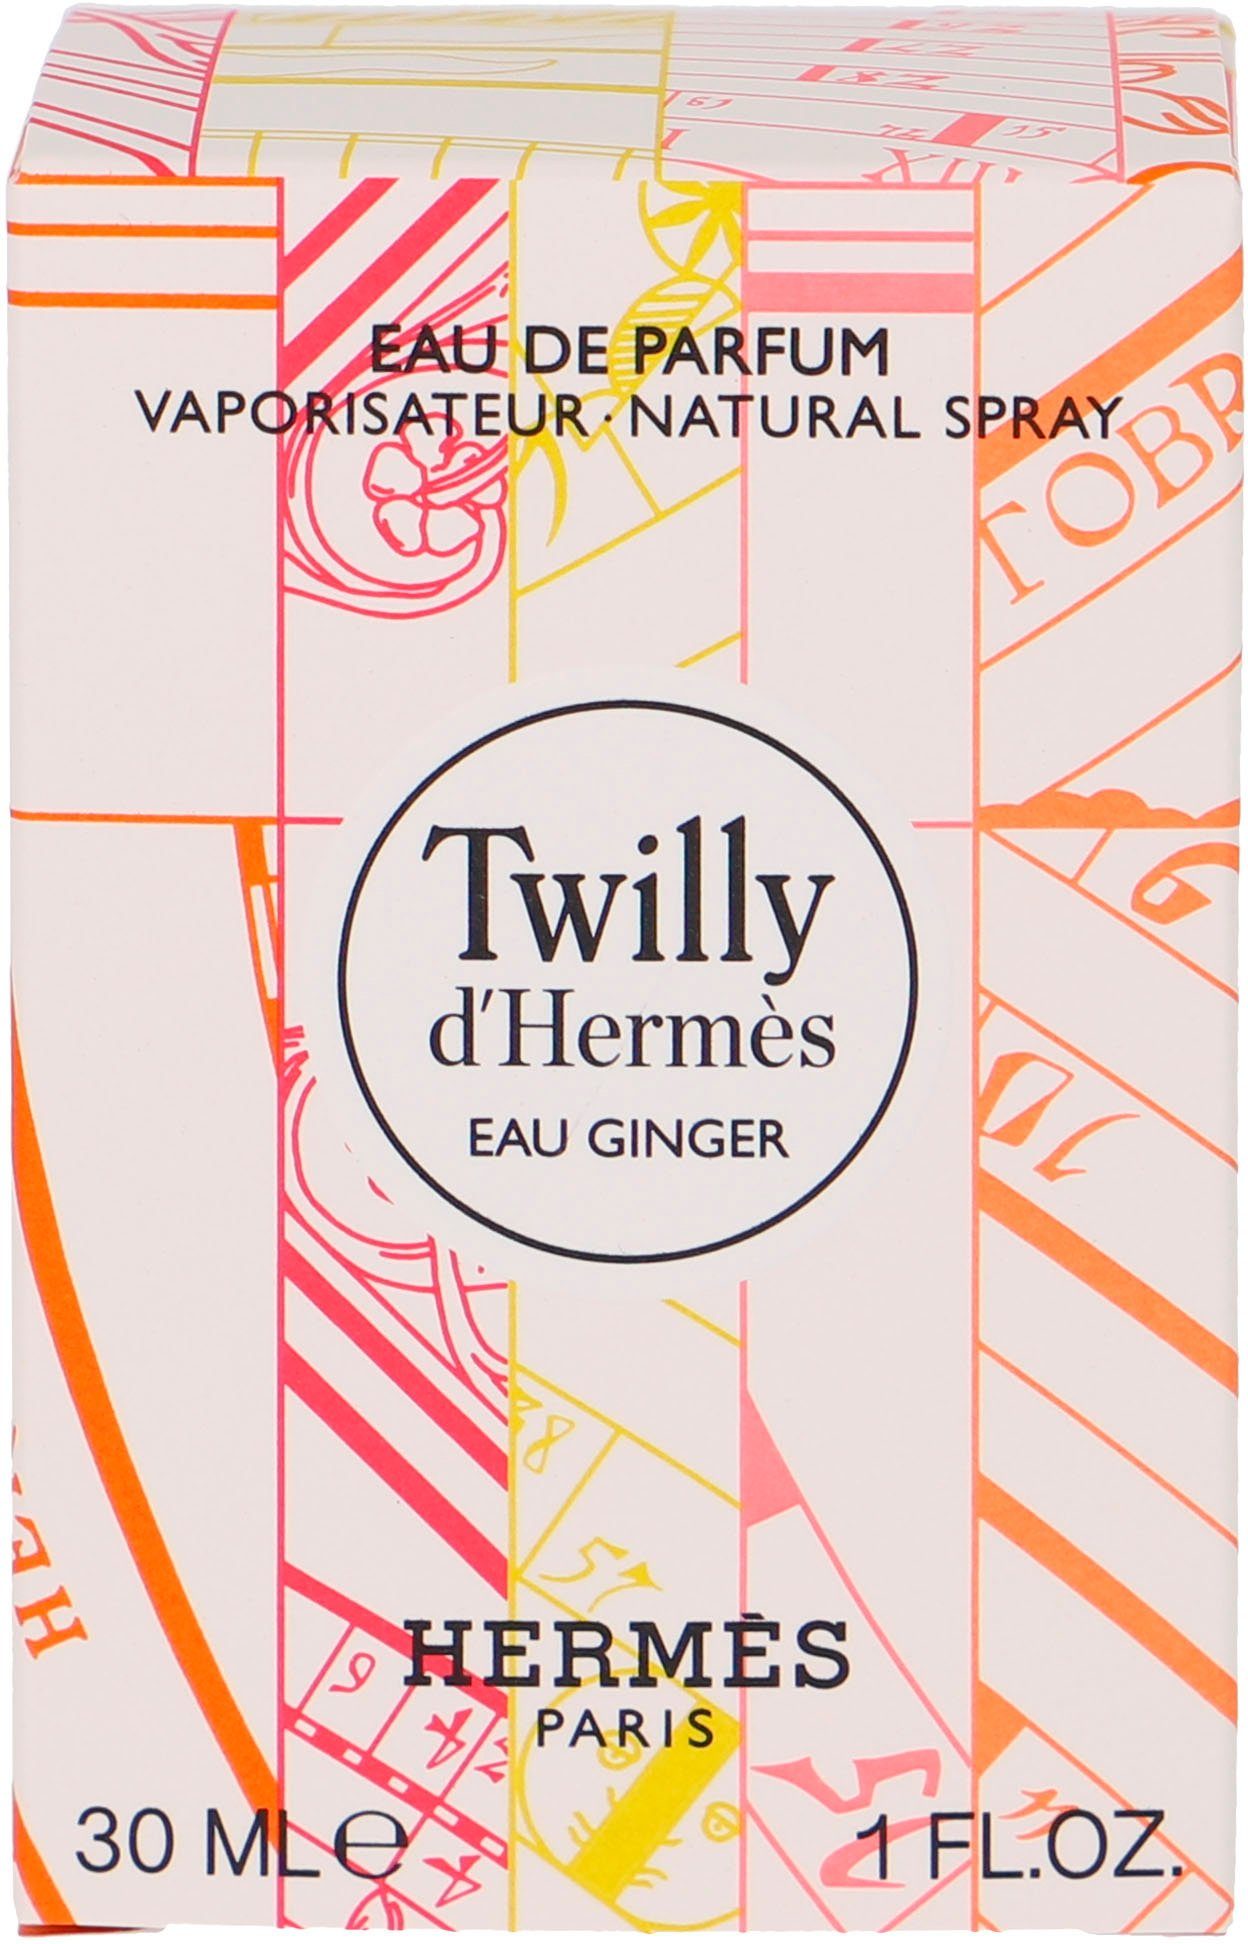 HERMÈS Eau de Parfum d'Eau Ginger Twilly